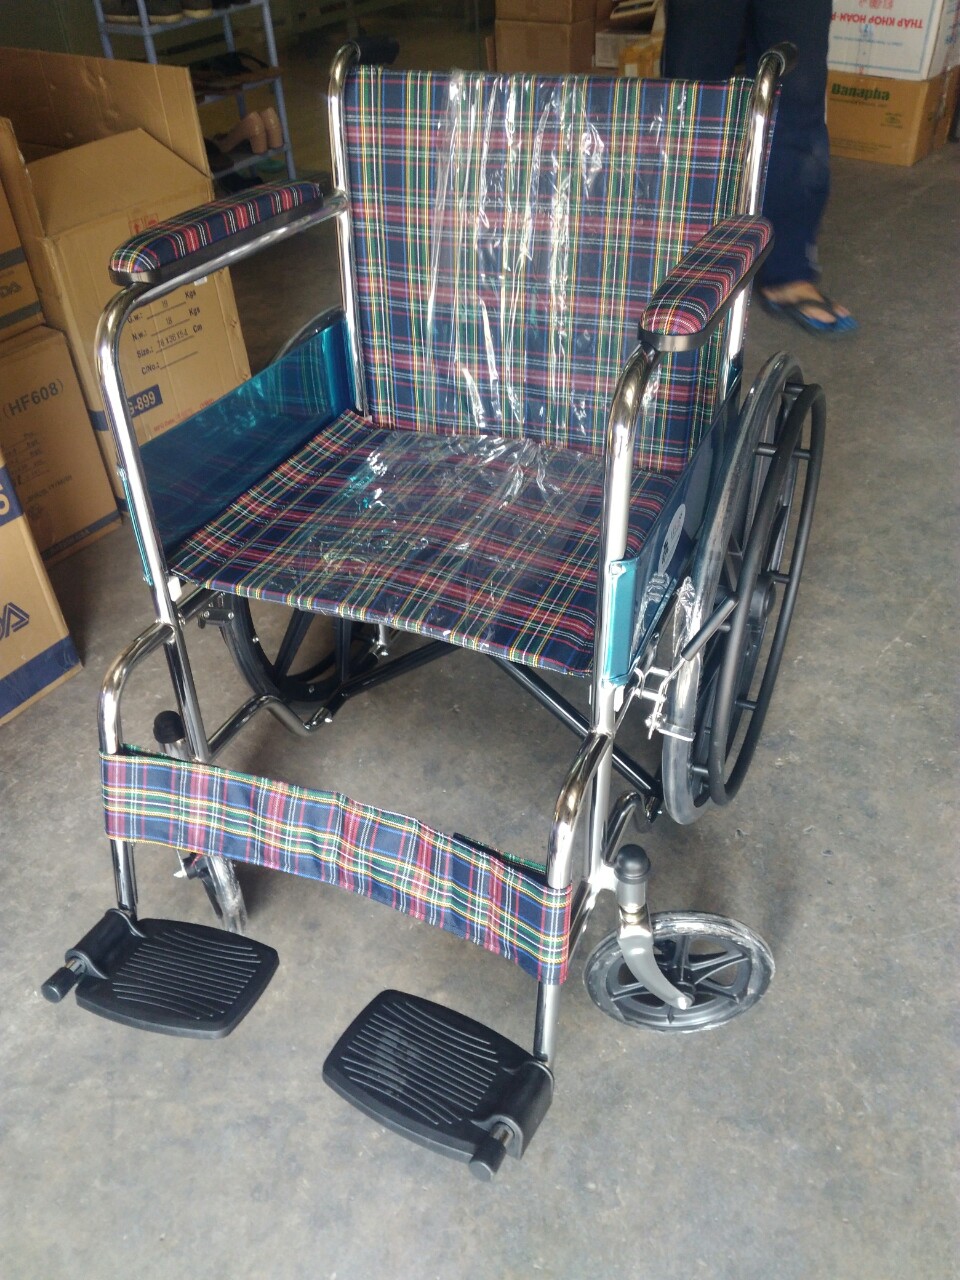 Xe lăn Lucass X9B là một sản phẩm tuyệt vời cho những người khuyết tật hoặc khó khăn về di chuyển. Với thiết kế tiện dụng và chất lượng đáng tin cậy, bạn sẽ thoải mái và tự tin hơn khi sử dụng sản phẩm này.